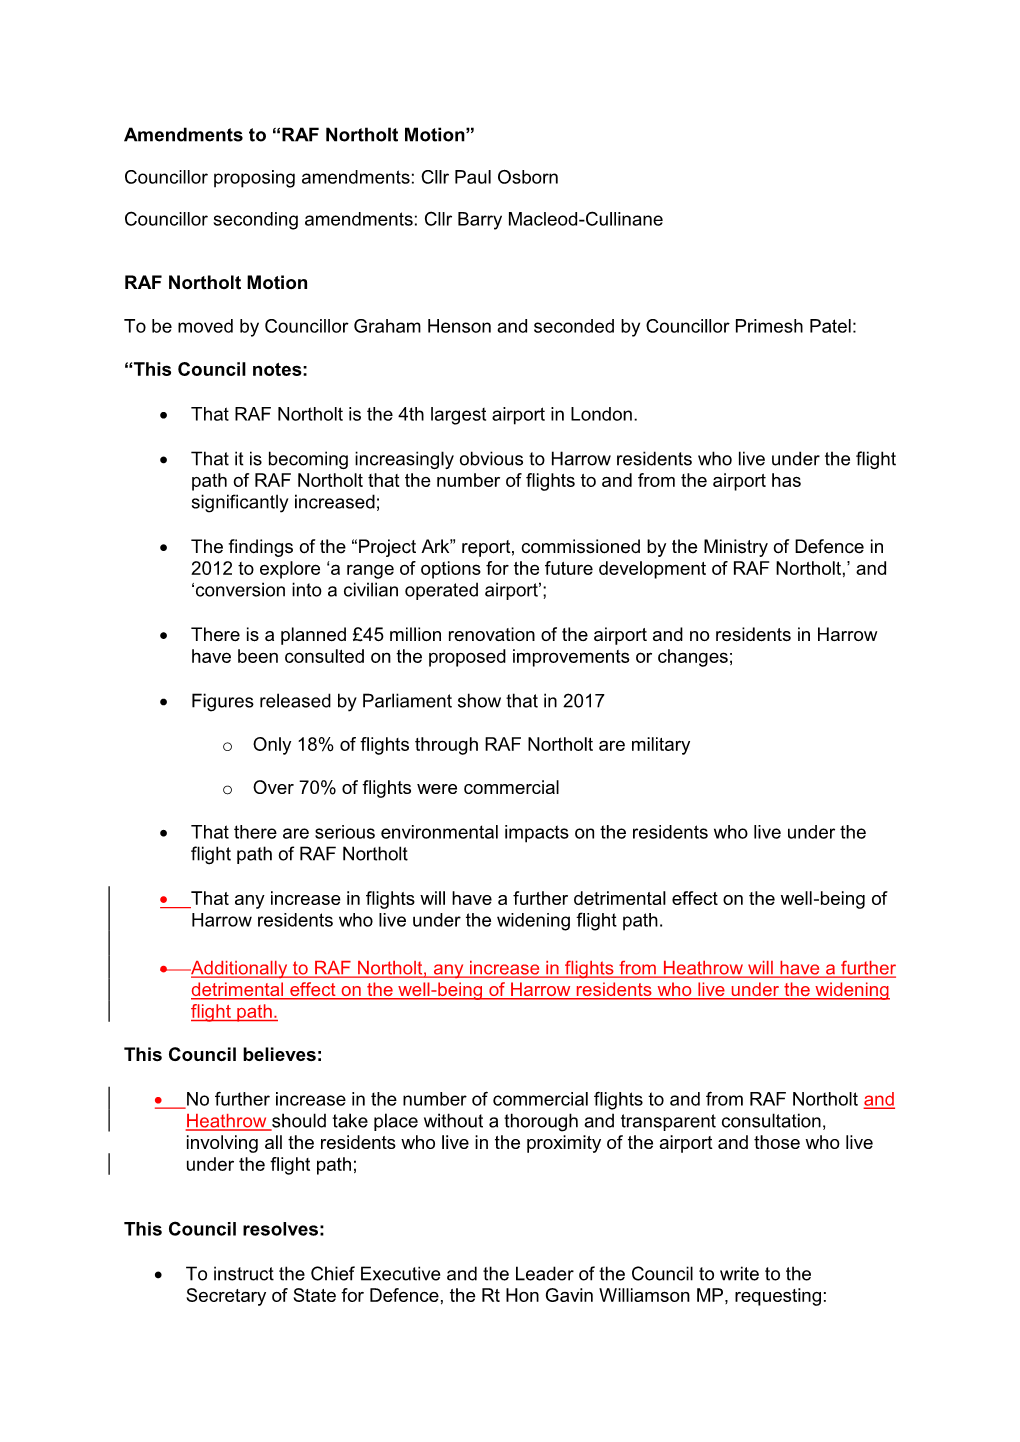 Amendments to “RAF Northolt Motion” Councillor Proposing Amendments